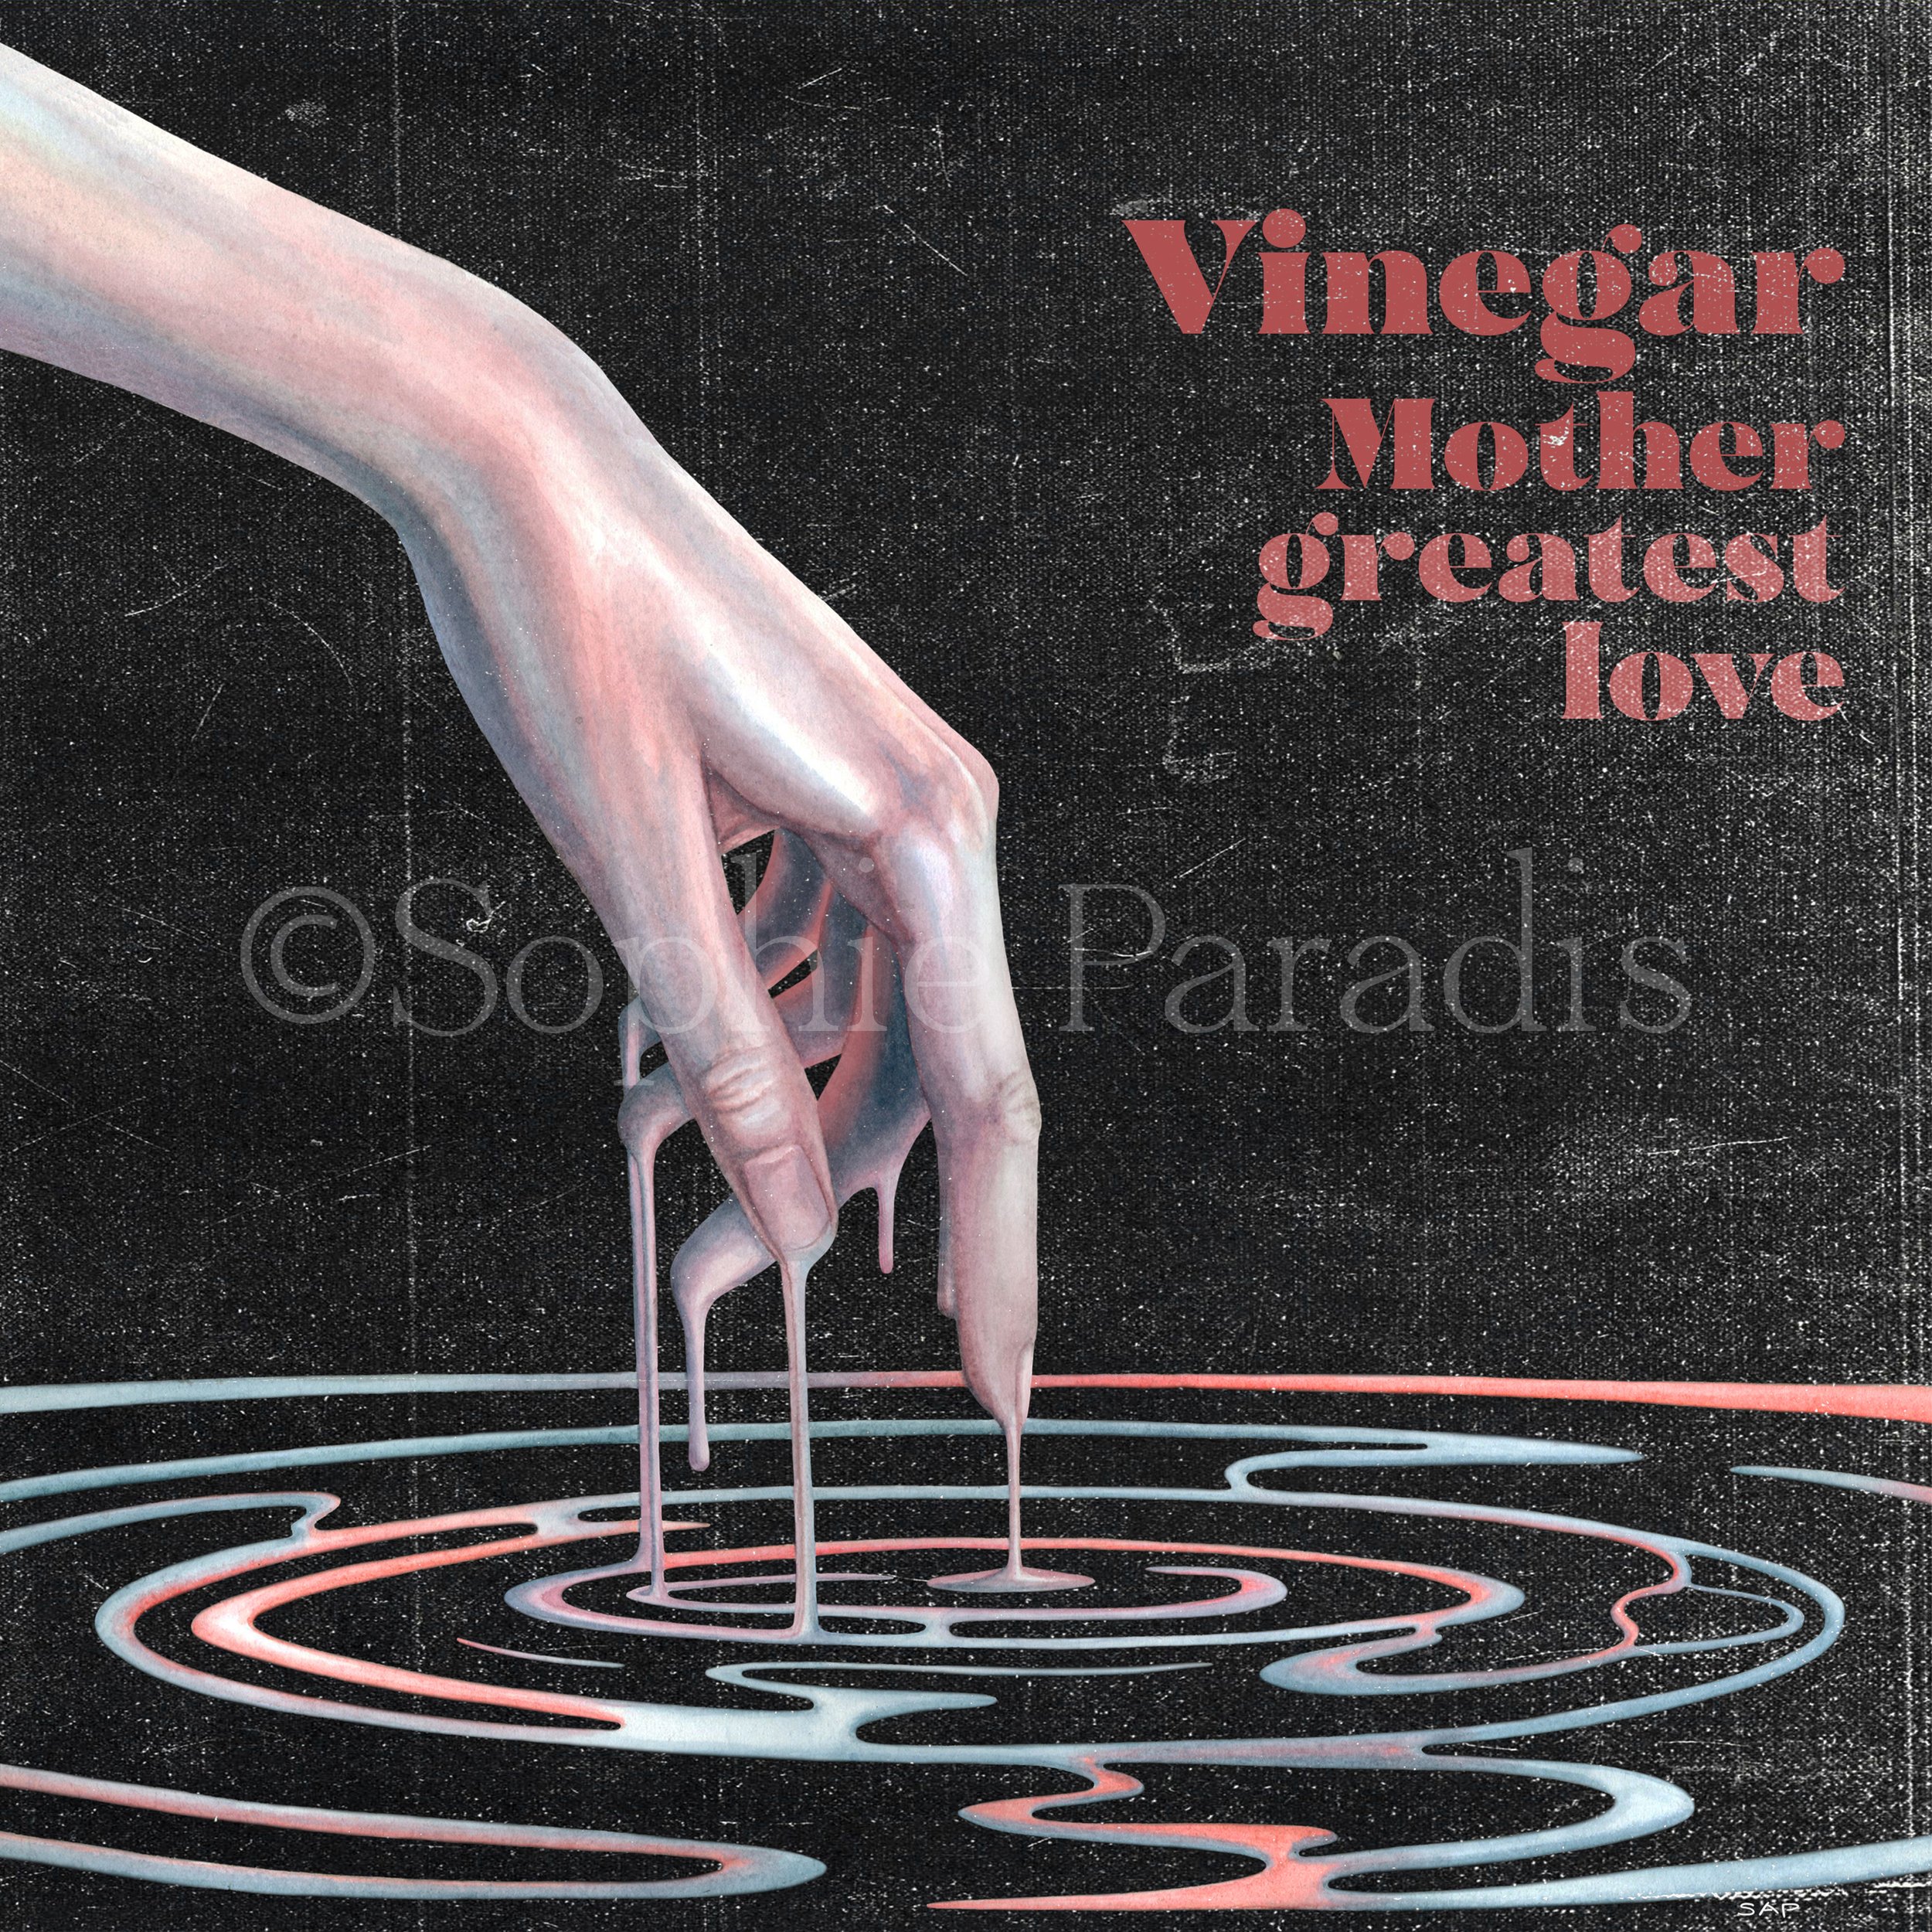 Vinegar Mother - Greatest Love